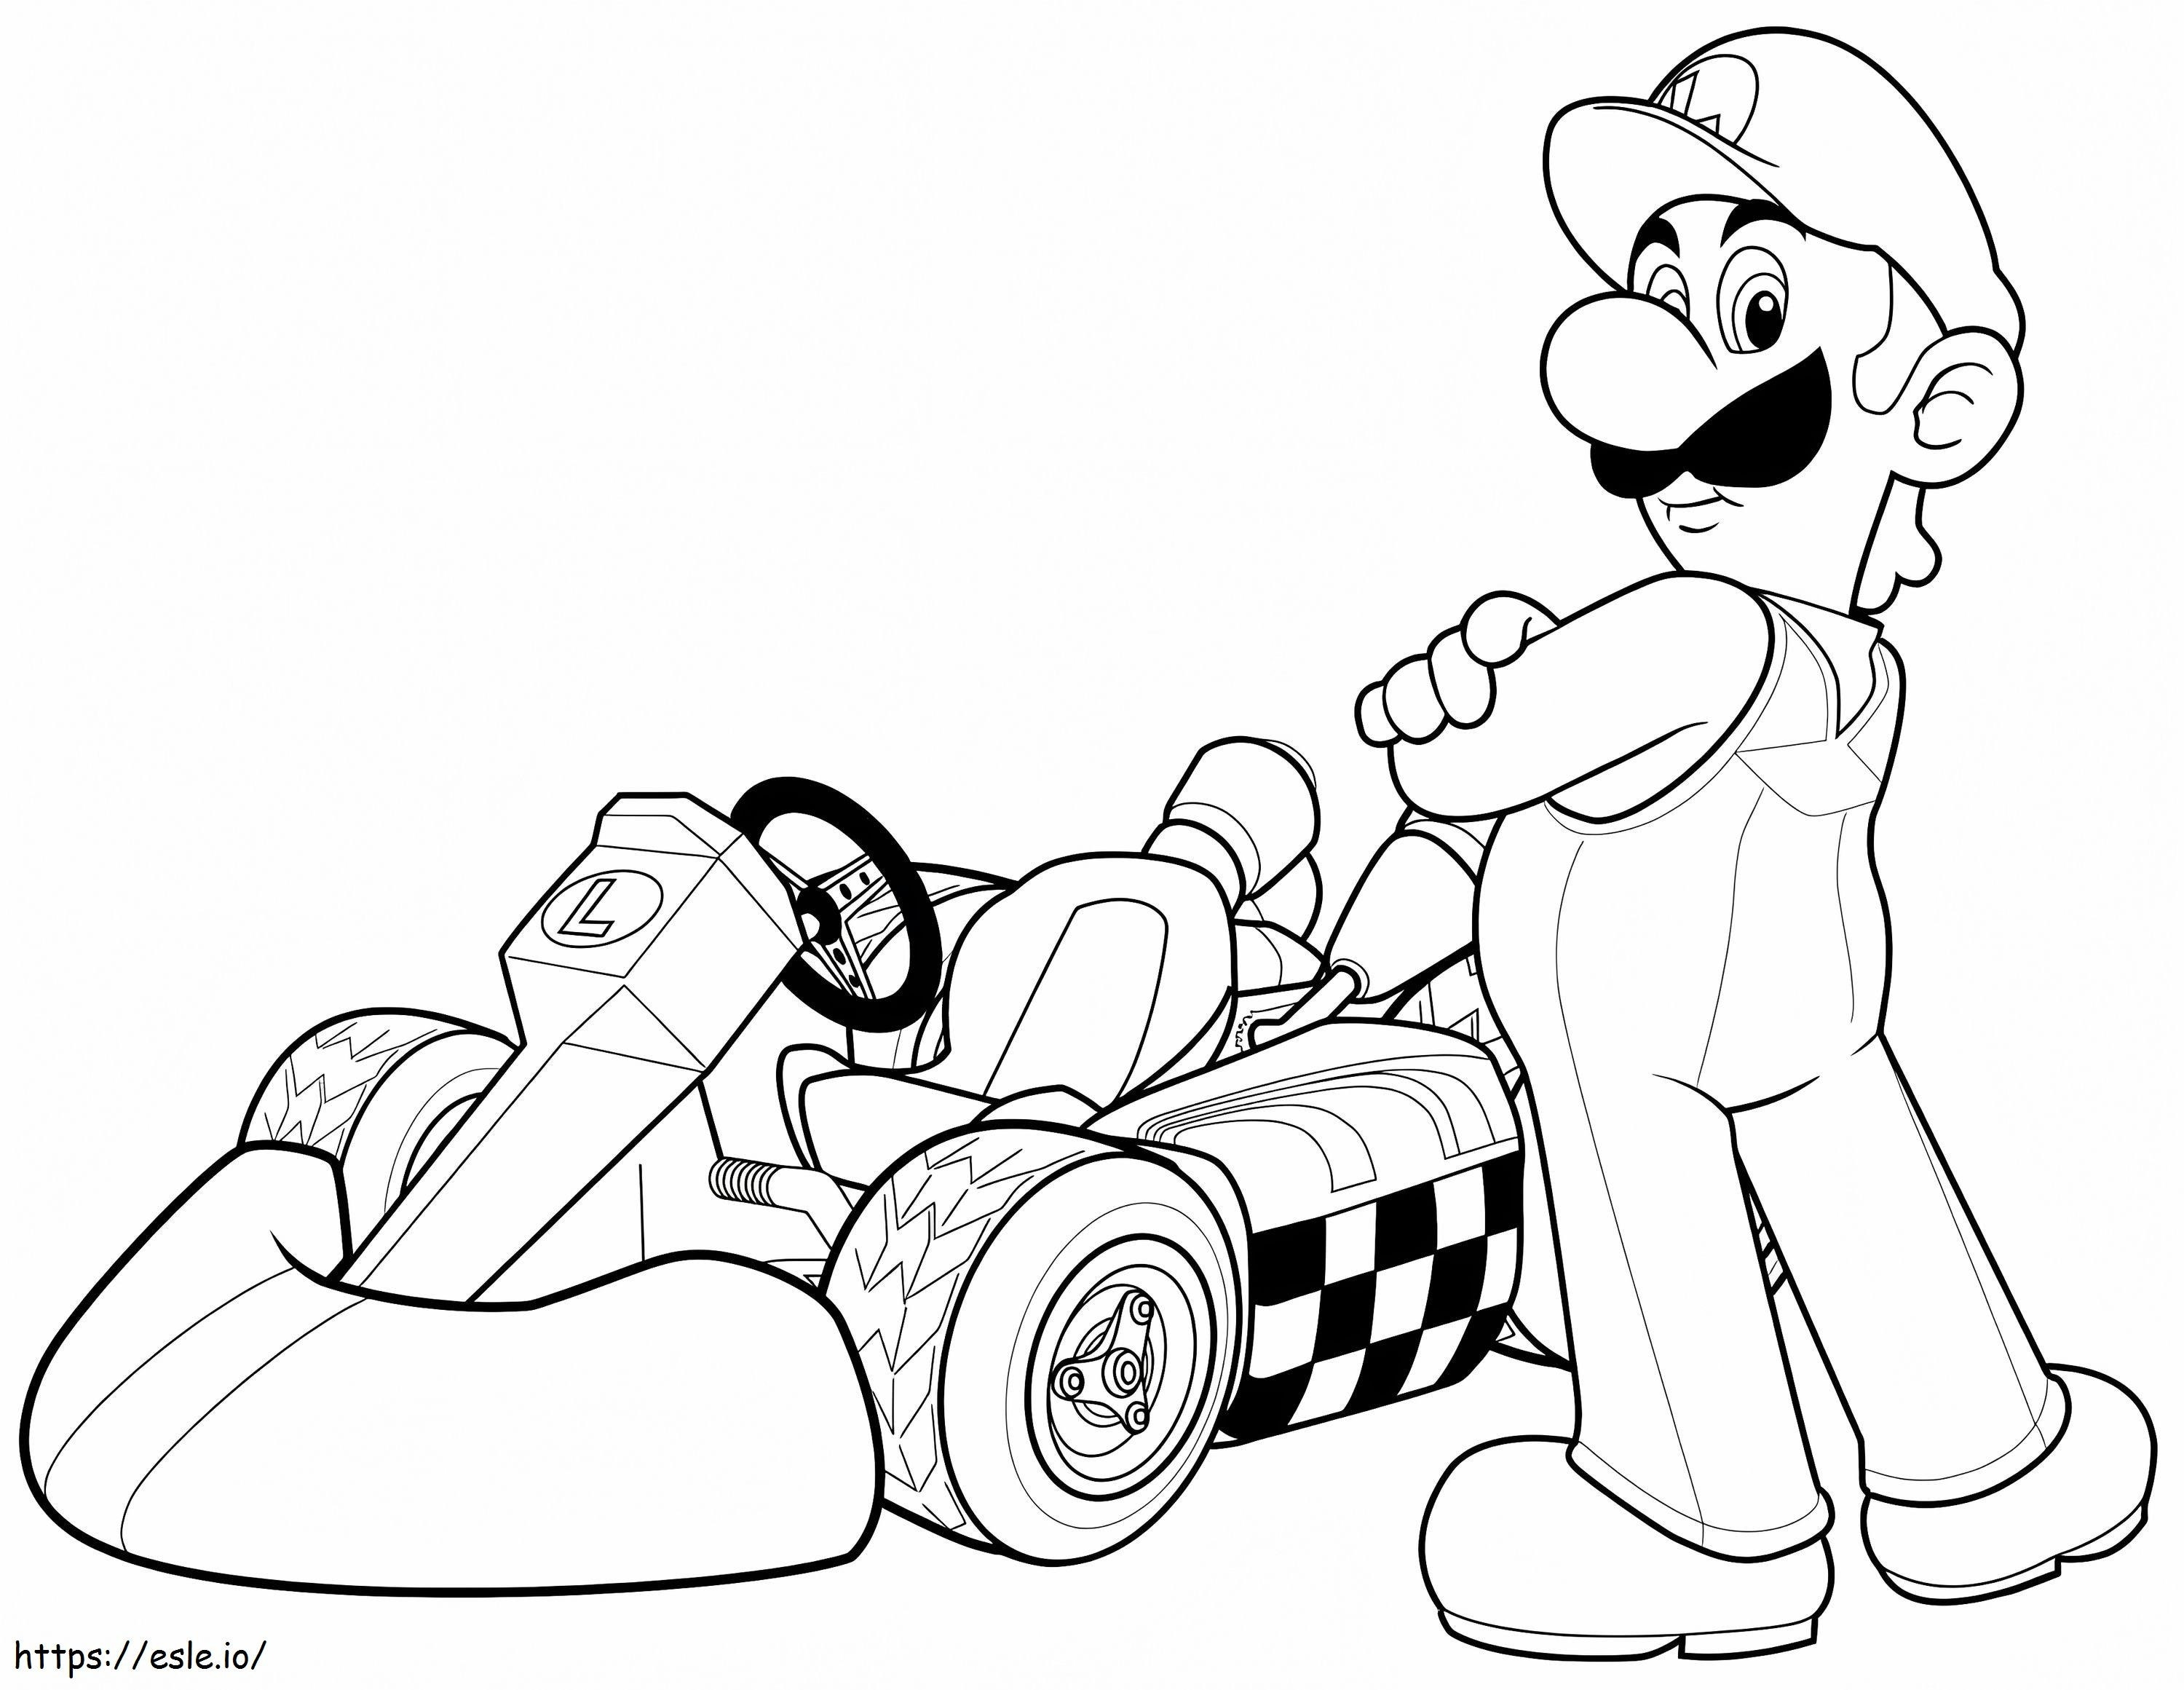 Luigi In Mario Kart Wii coloring page